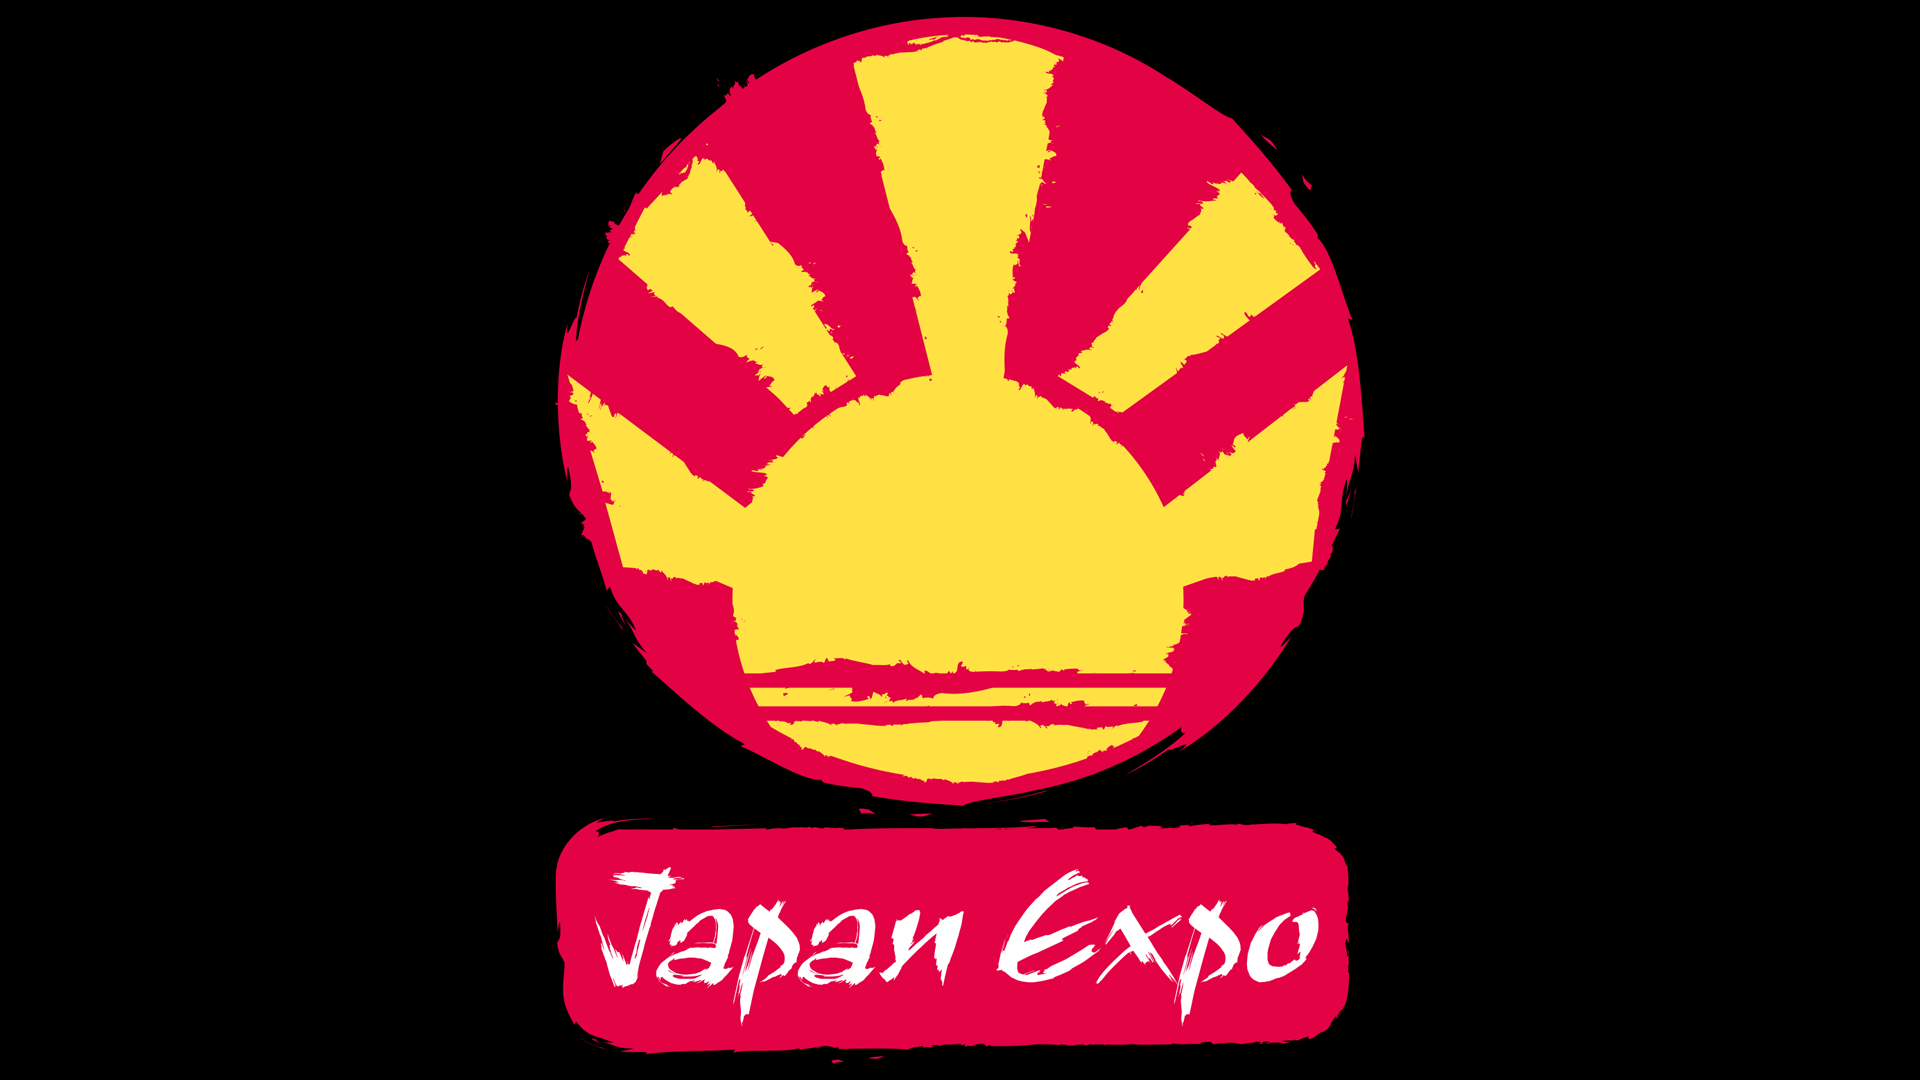 La Japan Expo est reportée en juillet 2021